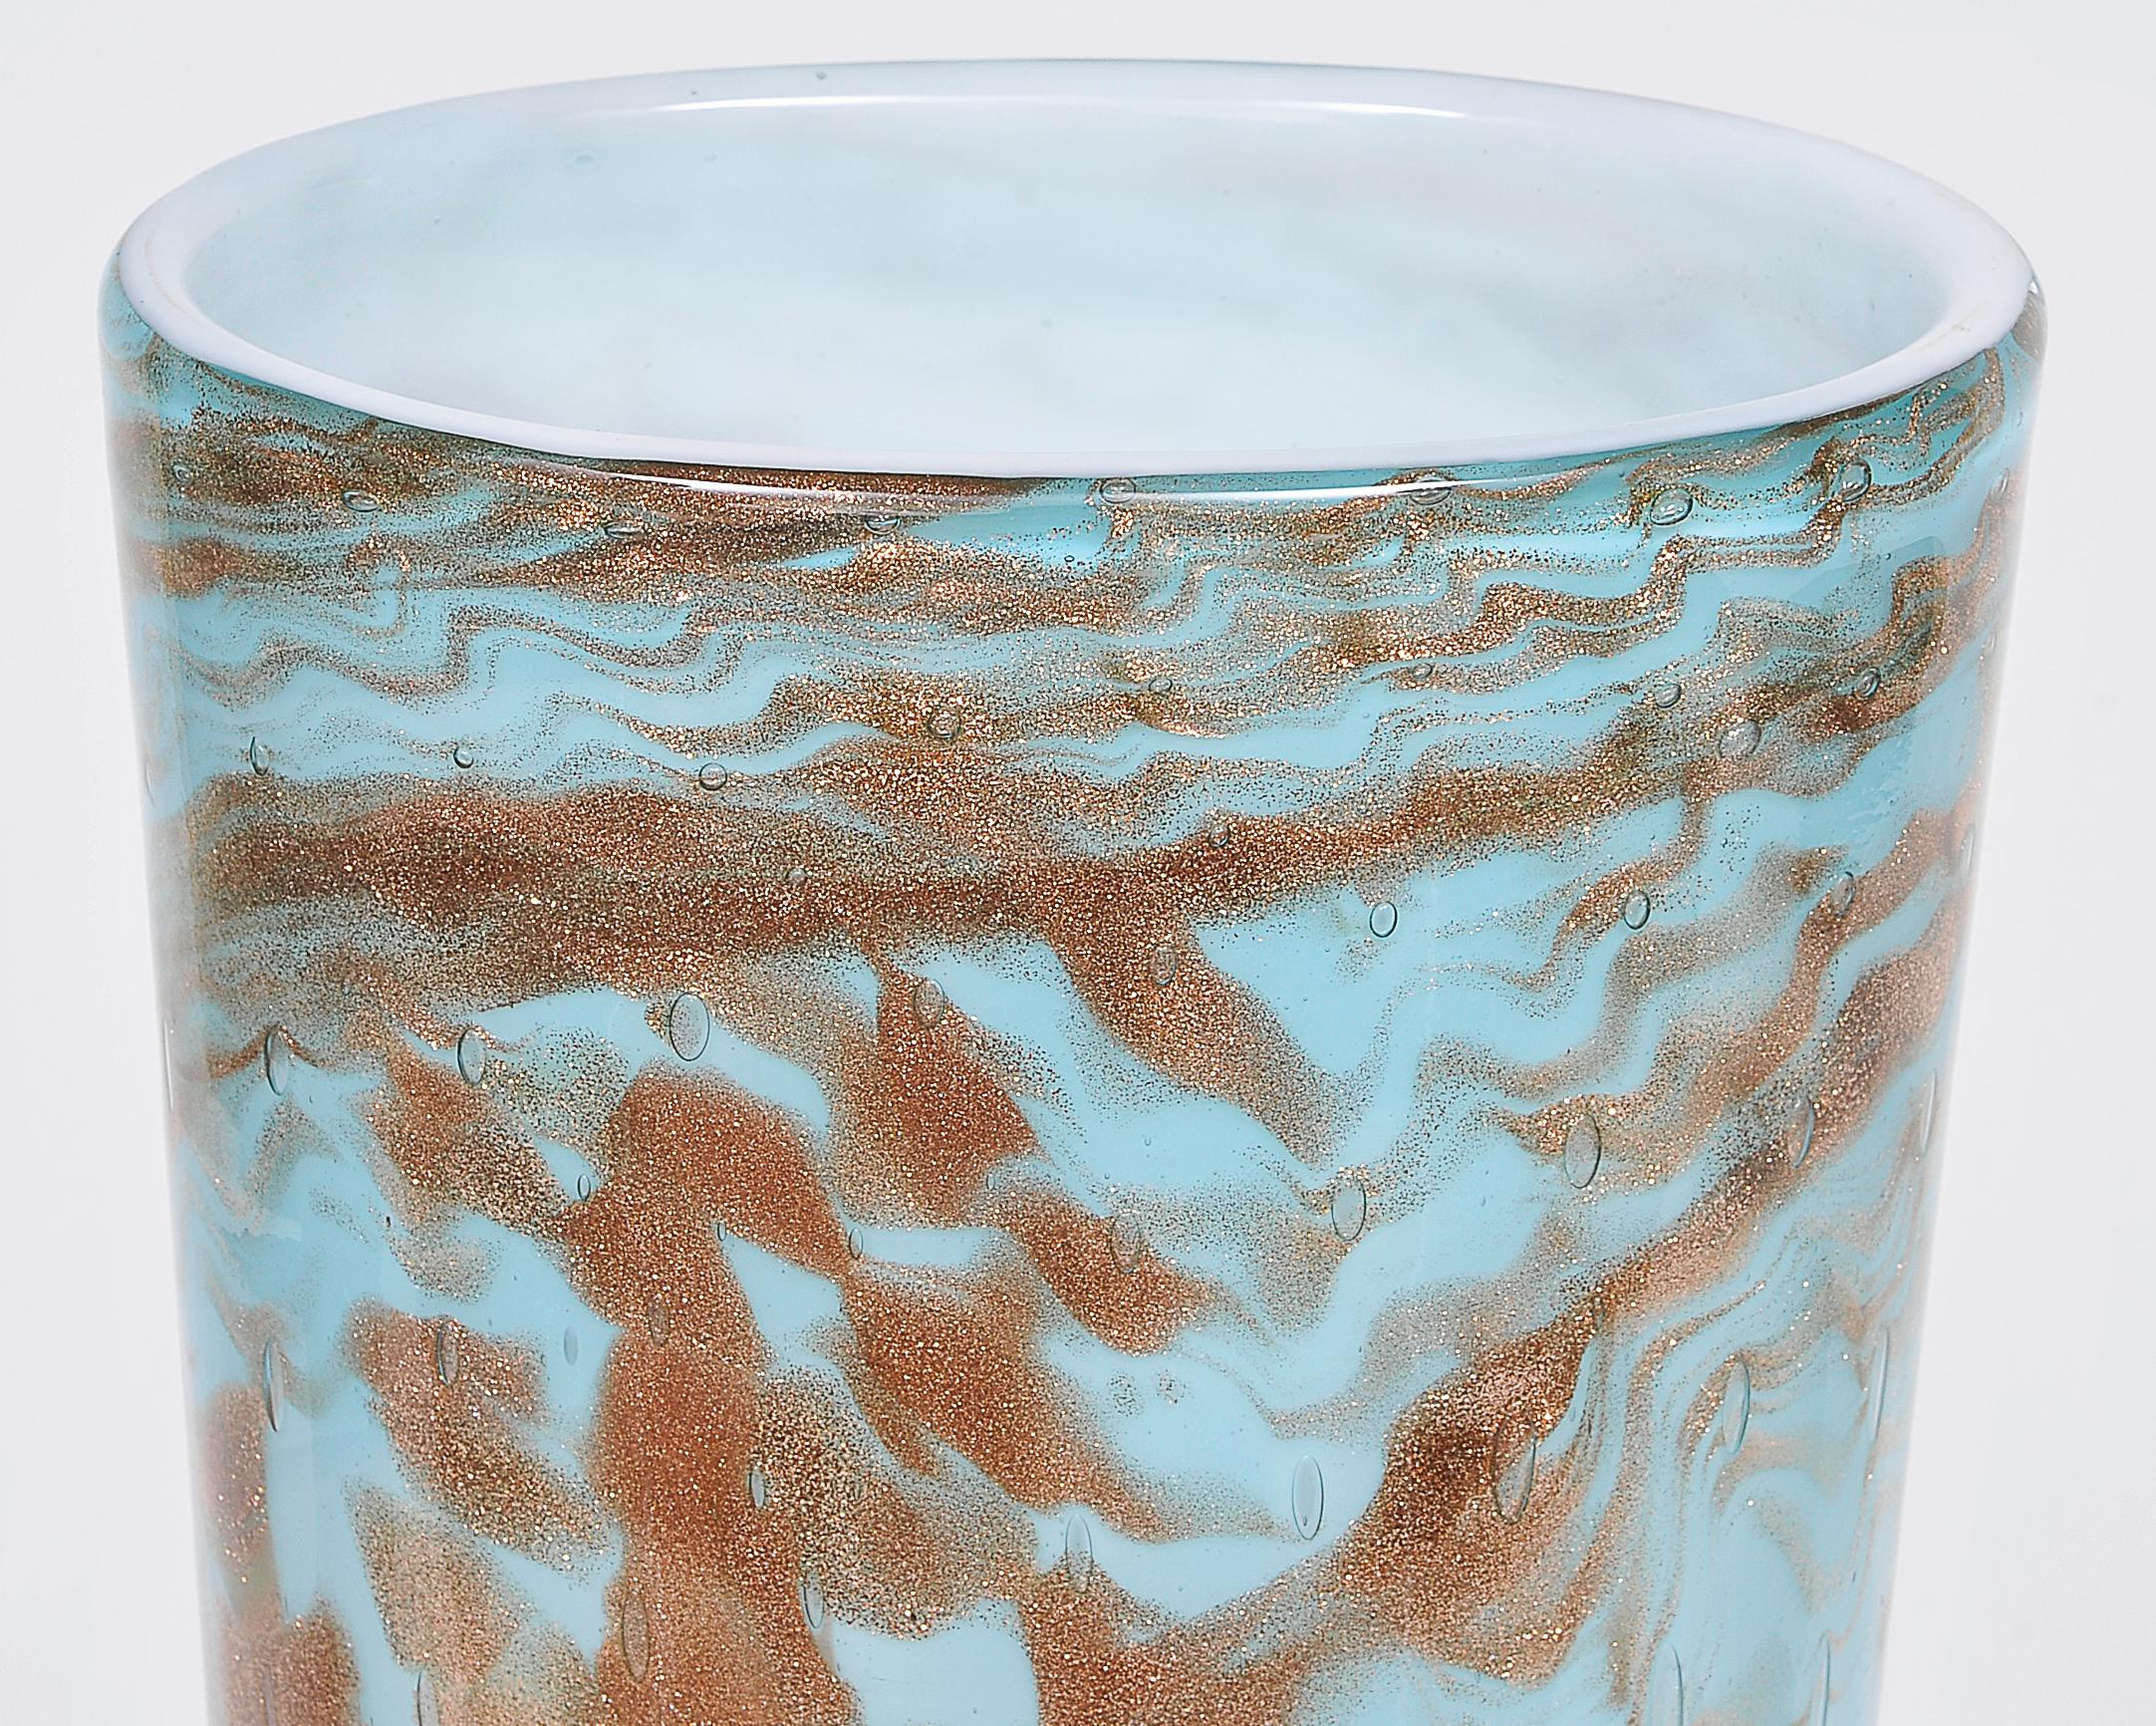 Italian Dino Martens Murano Artistic Blown Doble Glass with Bubbles Vase, circa 1950 For Sale